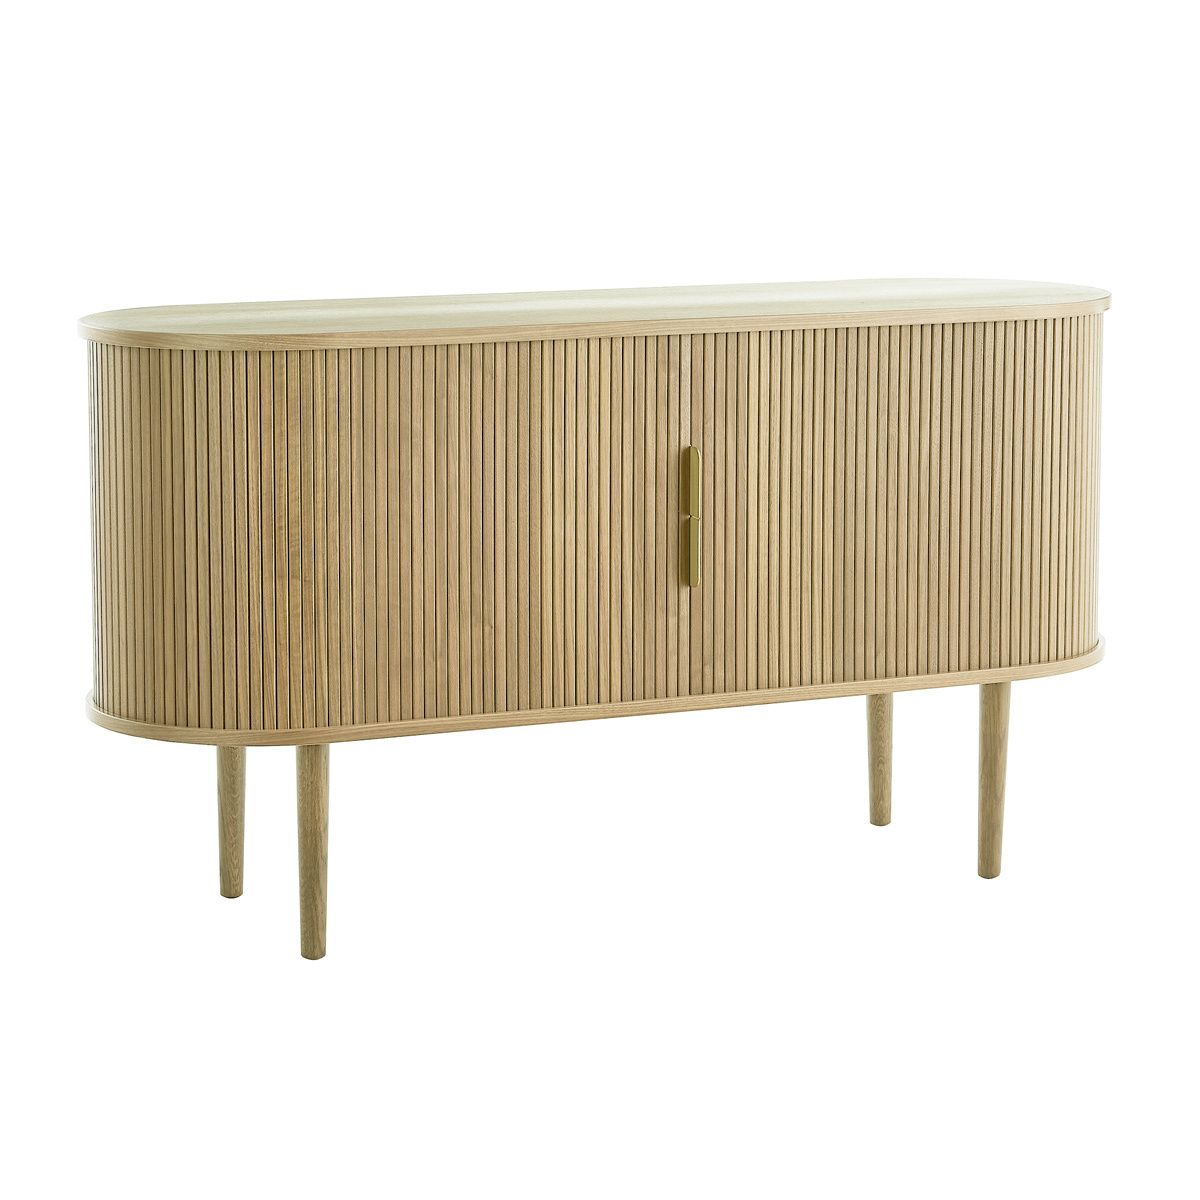 Bureau vintage avec rangements portes coulissantes bois clair chêne L130 cm  EPIC - Miliboo